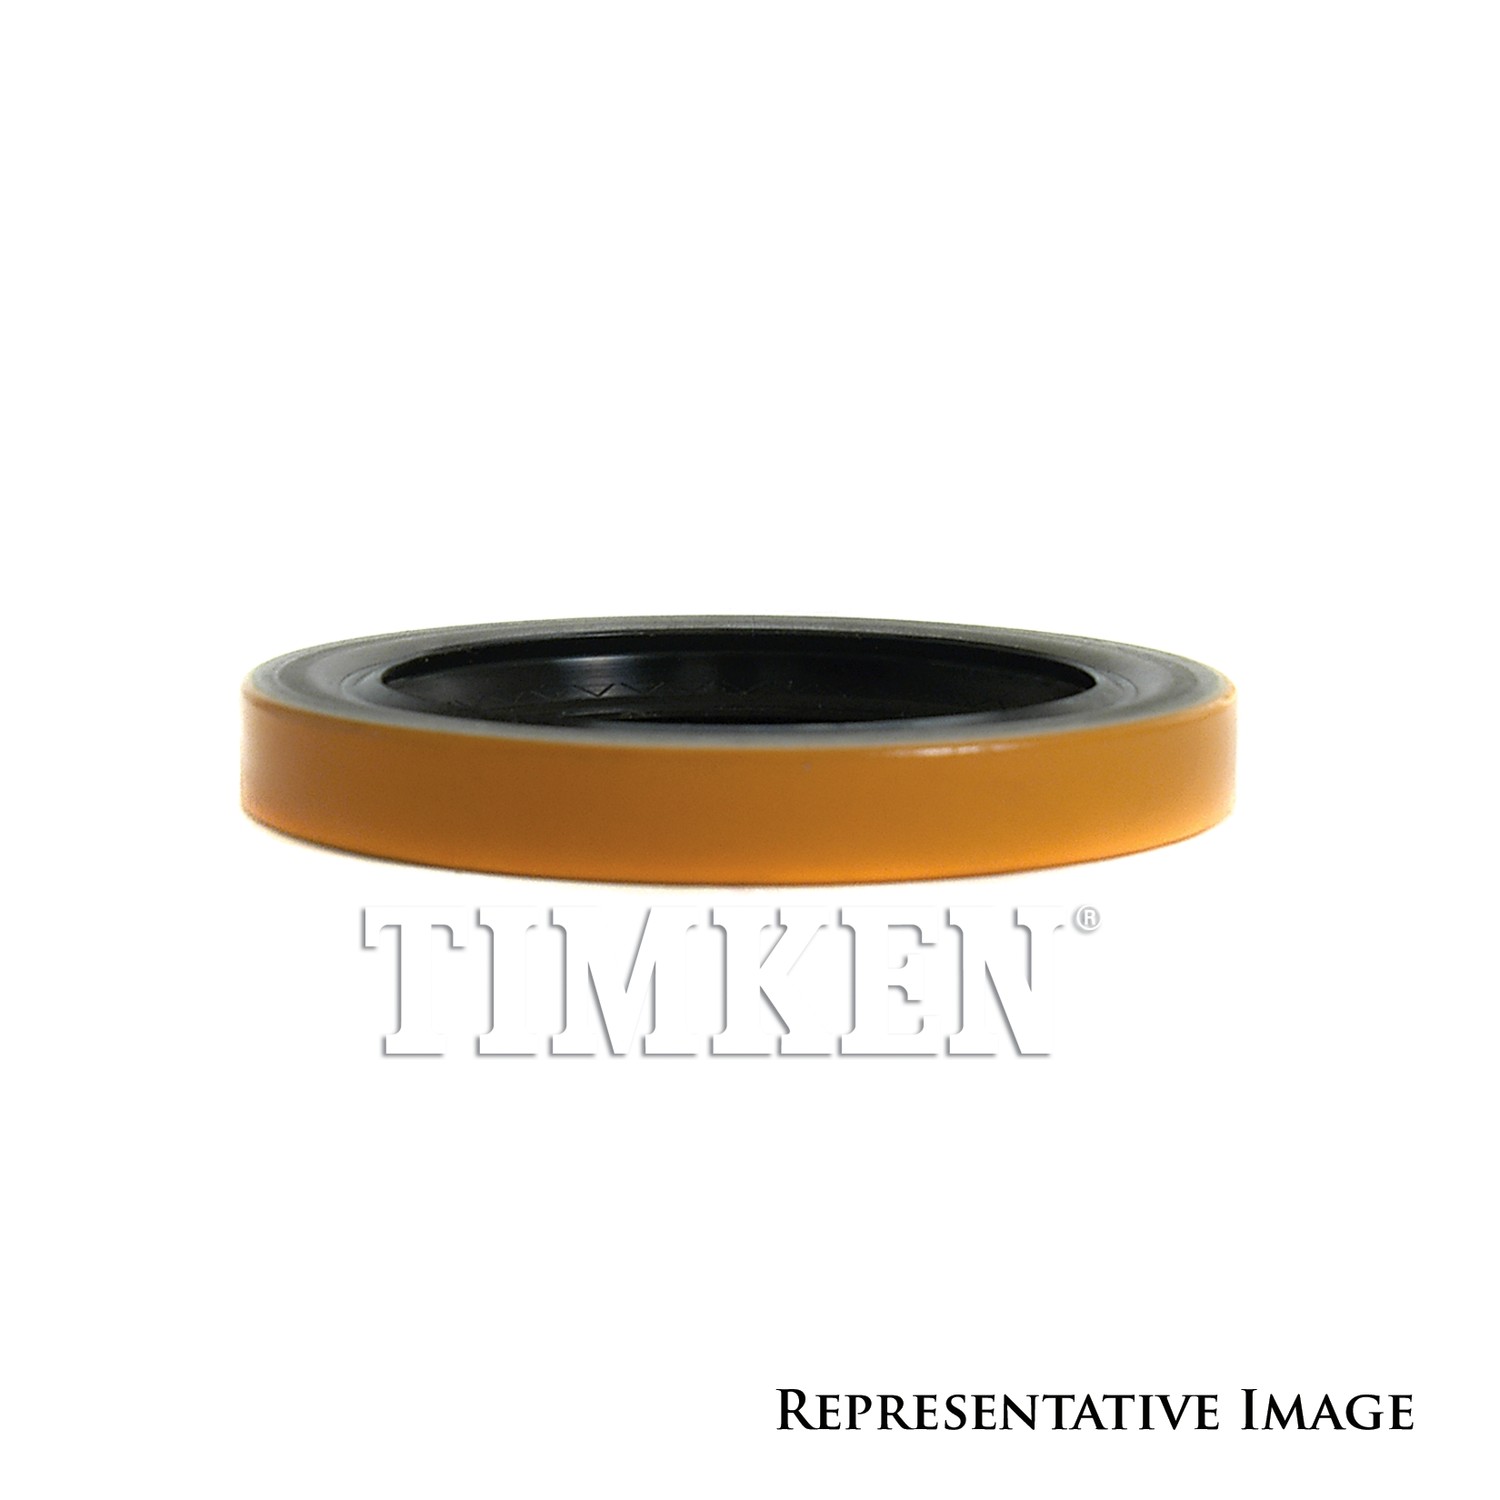 TIMKEN - Manual Trans Output Shaft Seal - TIM 710443